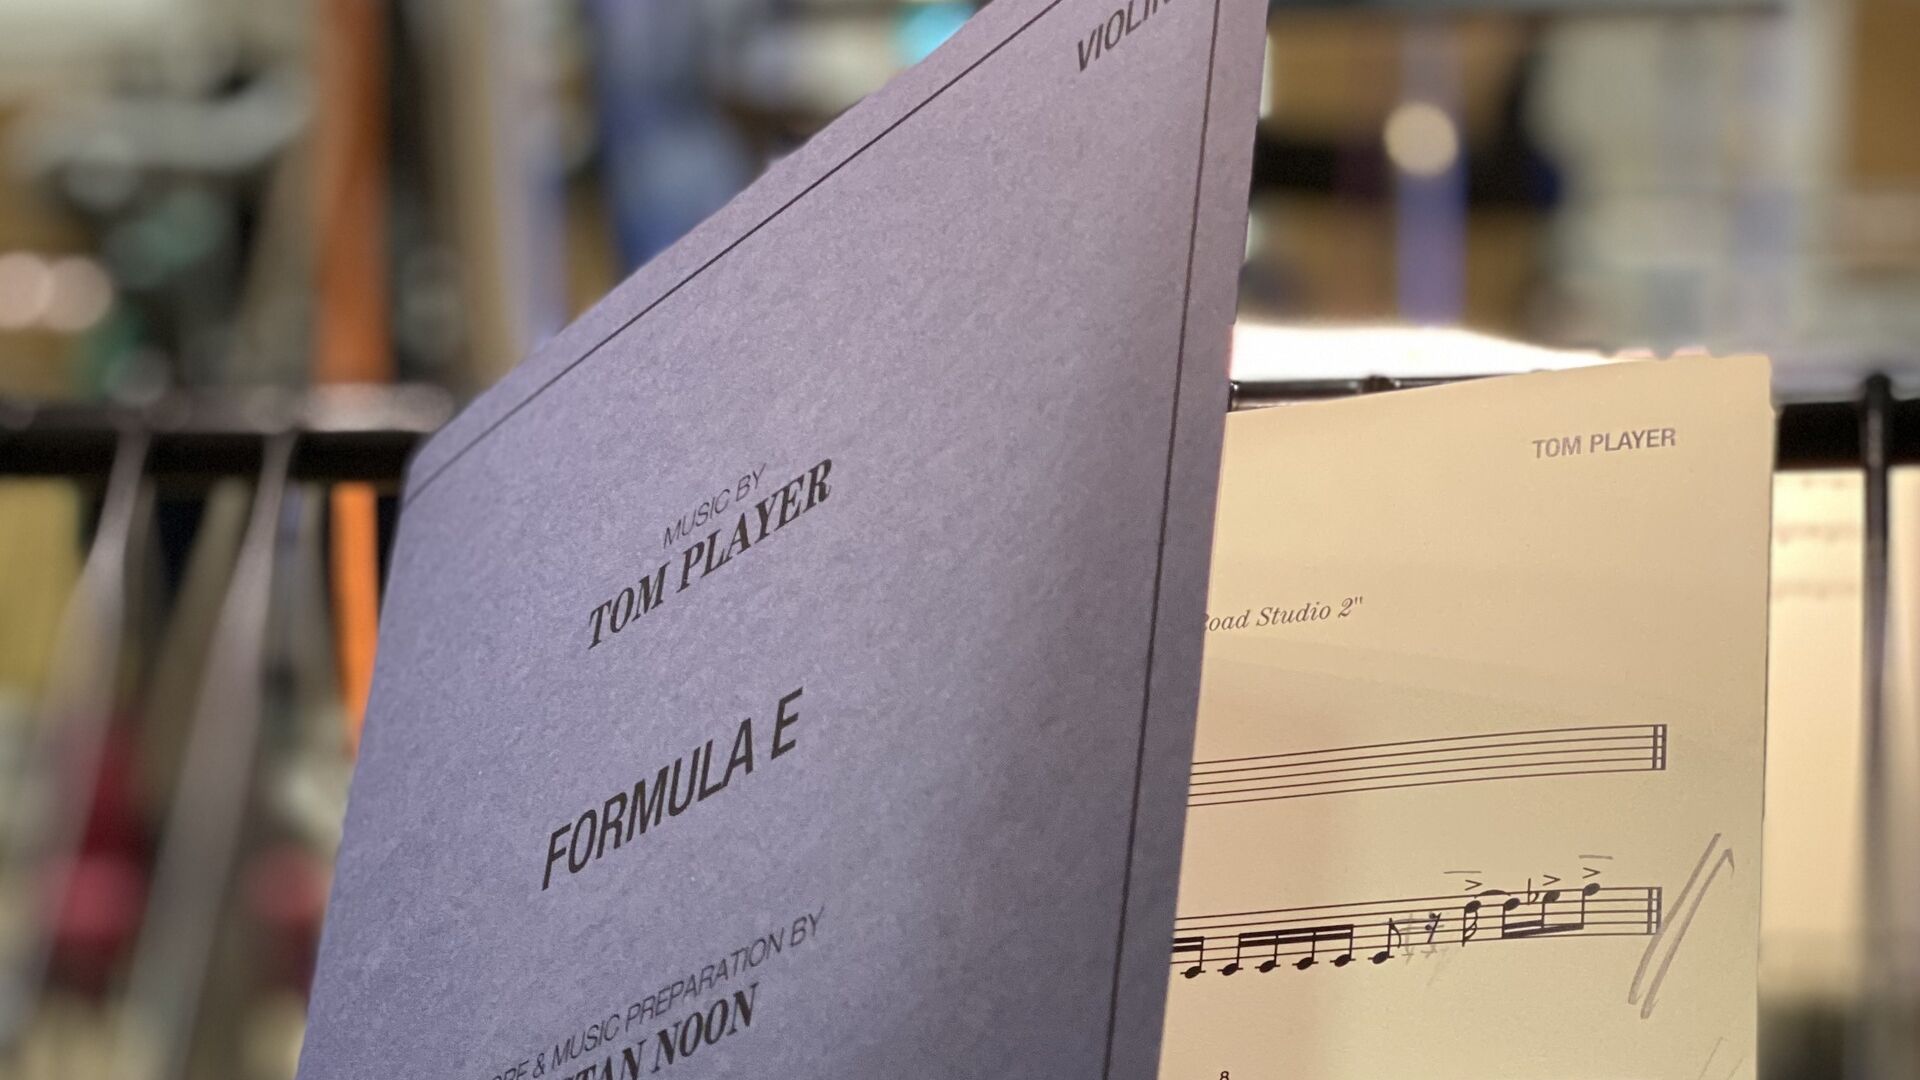 Formula E: アルバム「Change. Accelerated (The Official Formula E Soundtrack)」は、Tom Player による 55 トラックを収録しています。この中には、"Rising" (メイン タイトル)、"Resolution" (結果)、"Vamos" (表彰台) が含まれており、すべてライブ録音されています。 Abbey Road Studios の XNUMX 人編成のオーケストラ